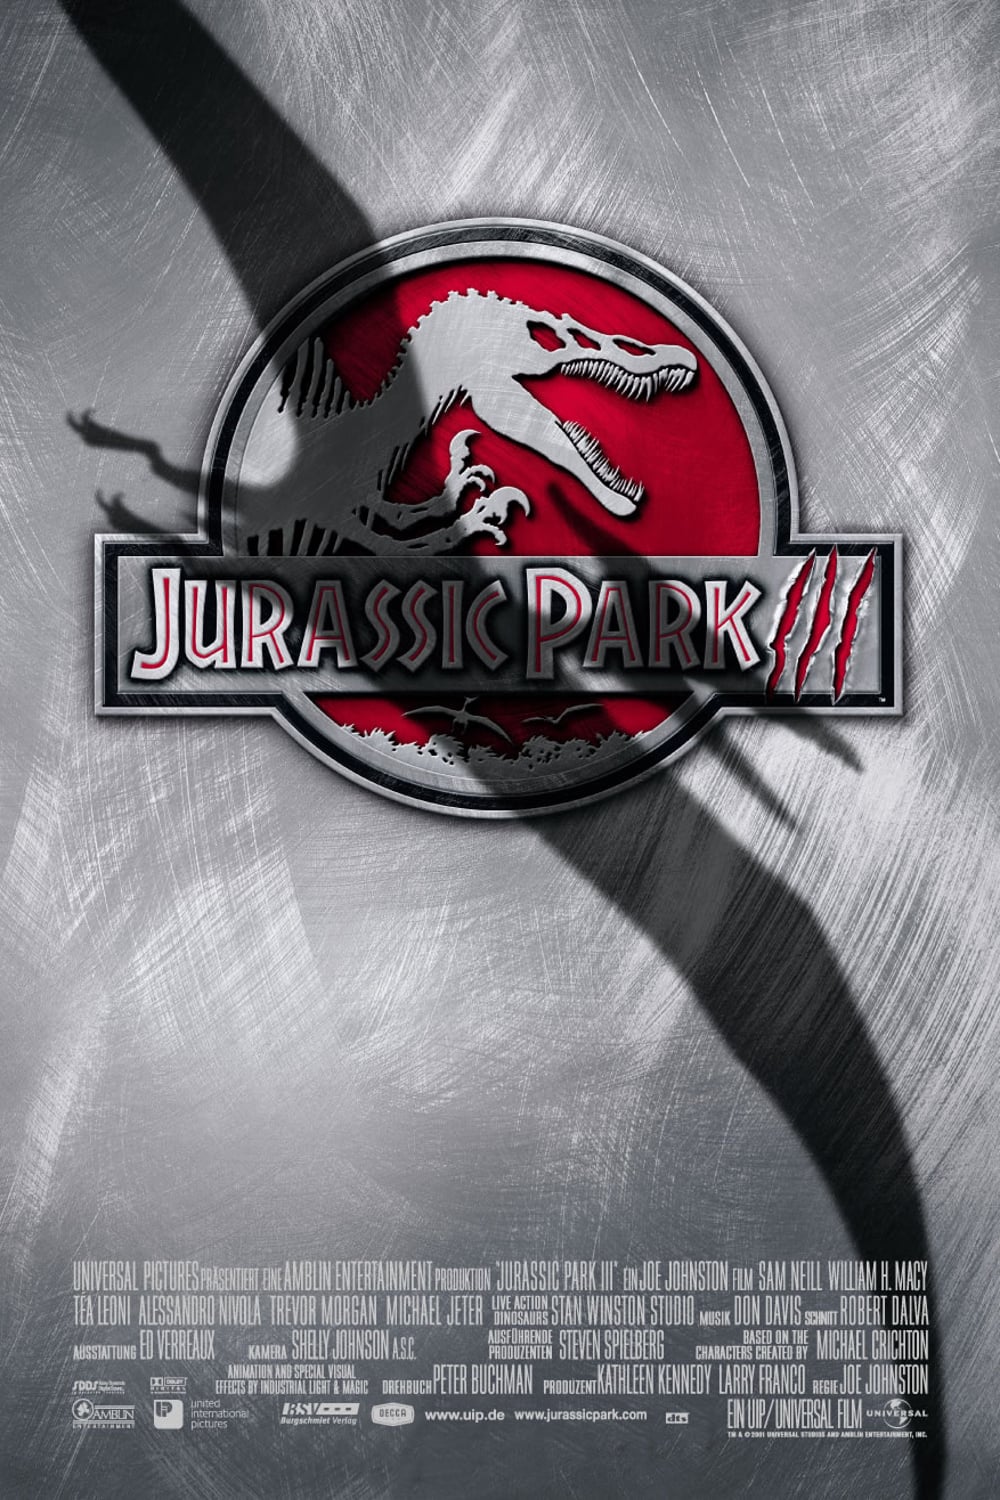 Plakat von "Jurassic Park III"